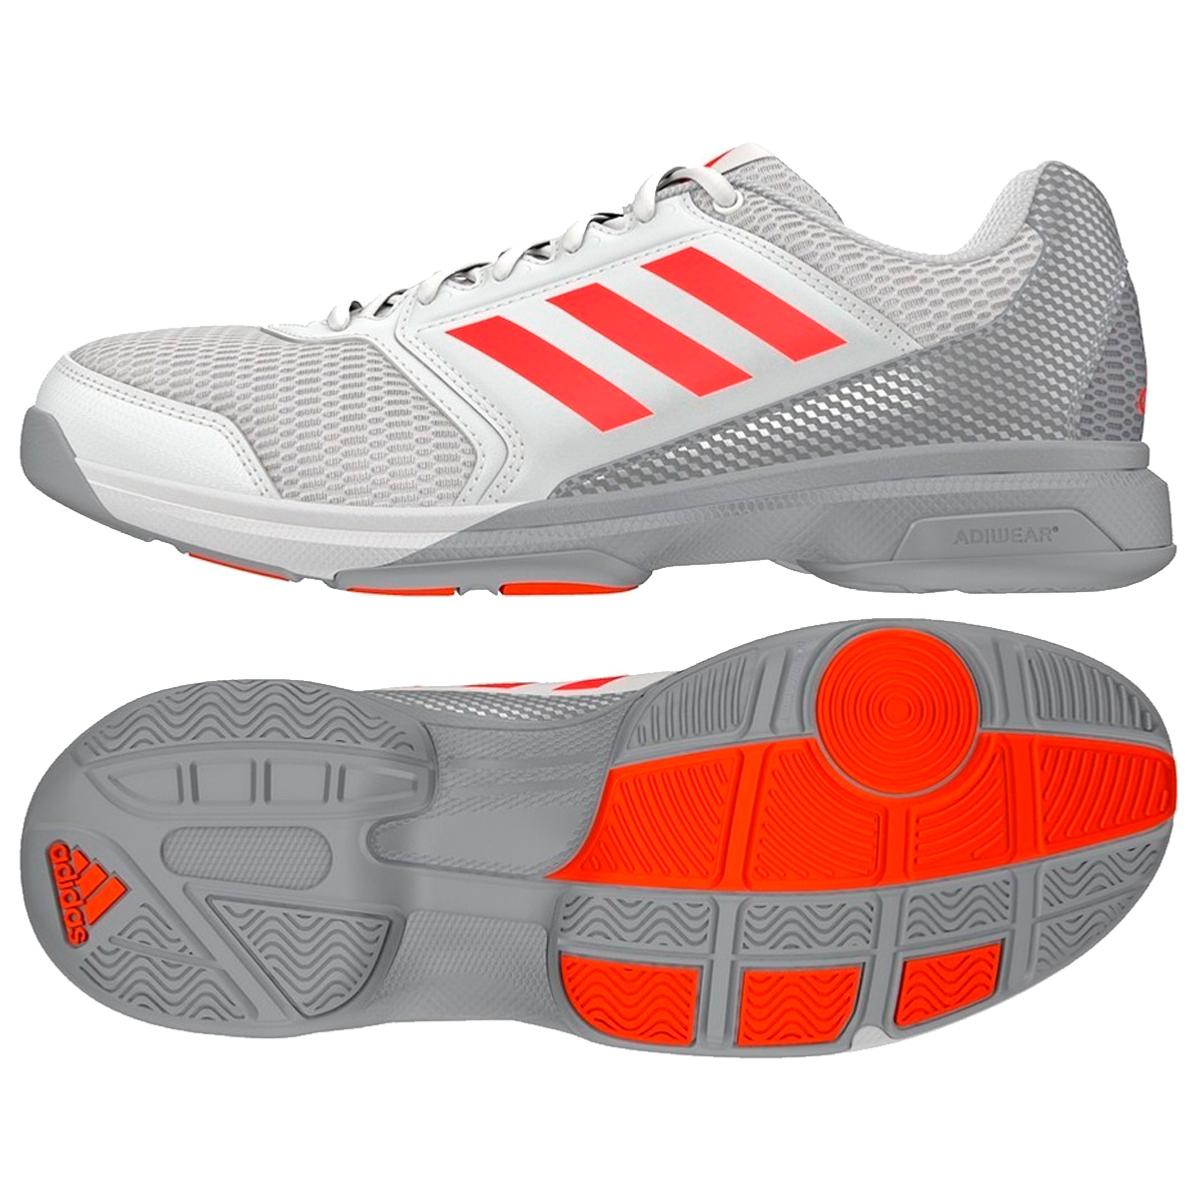 Comprar Zapatillas de squash Adidas Multido Essence al mejor precio